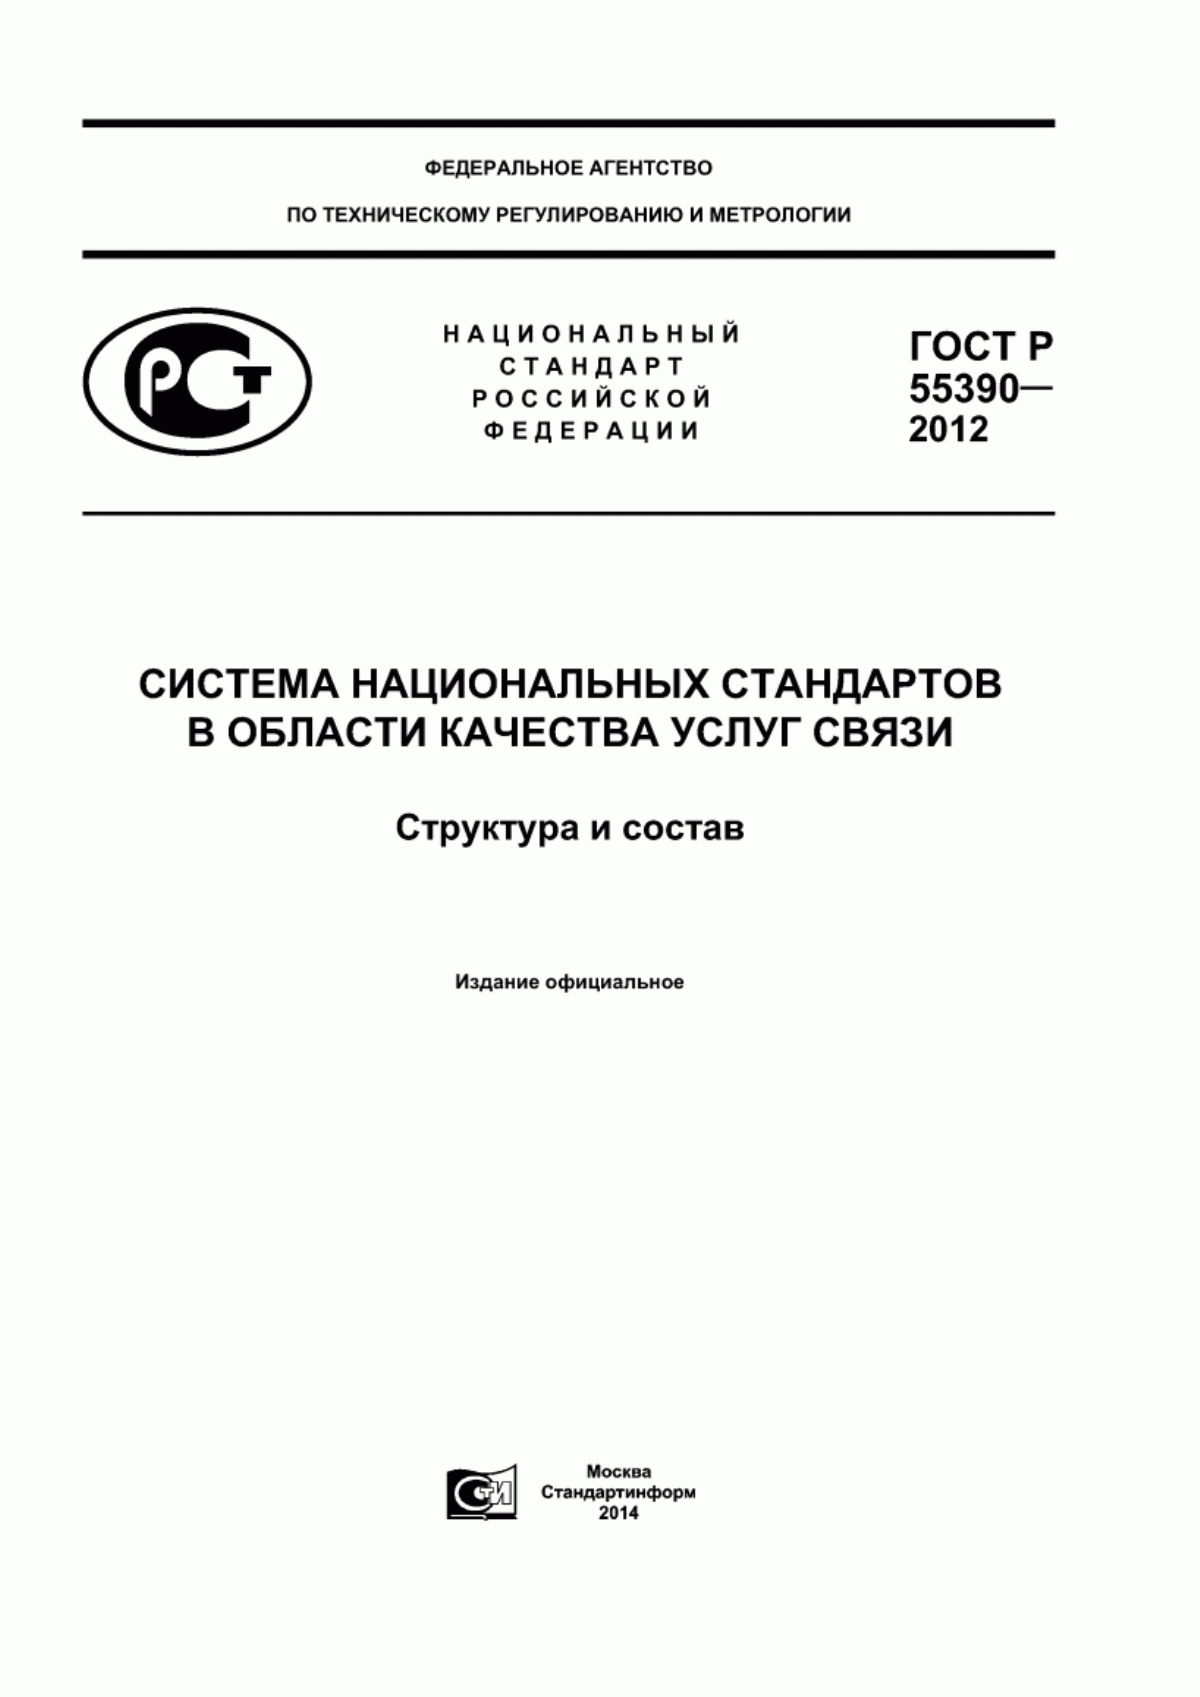 ГОСТ Р 55390-2012 Система национальных стандартов в области качества услуг связи. Структура и состав